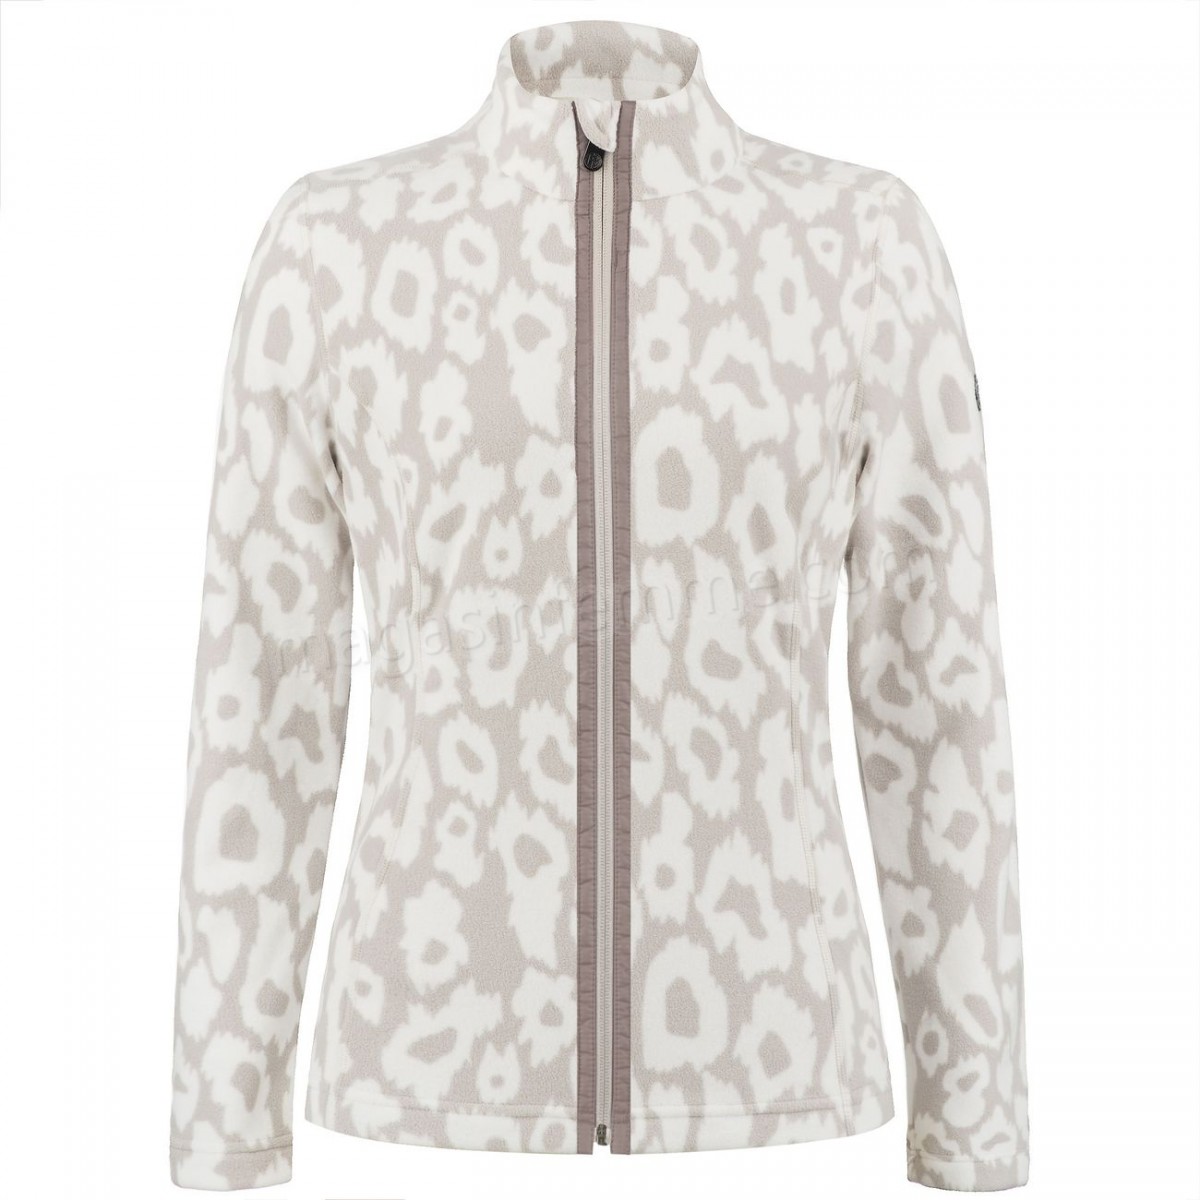 Poivre Blanc-Sports d'hiver femme POIVRE BLANC Veste Polaire Poivre Blanc Fleece Jacket 1500 Panther Grey Femme en solde - -0